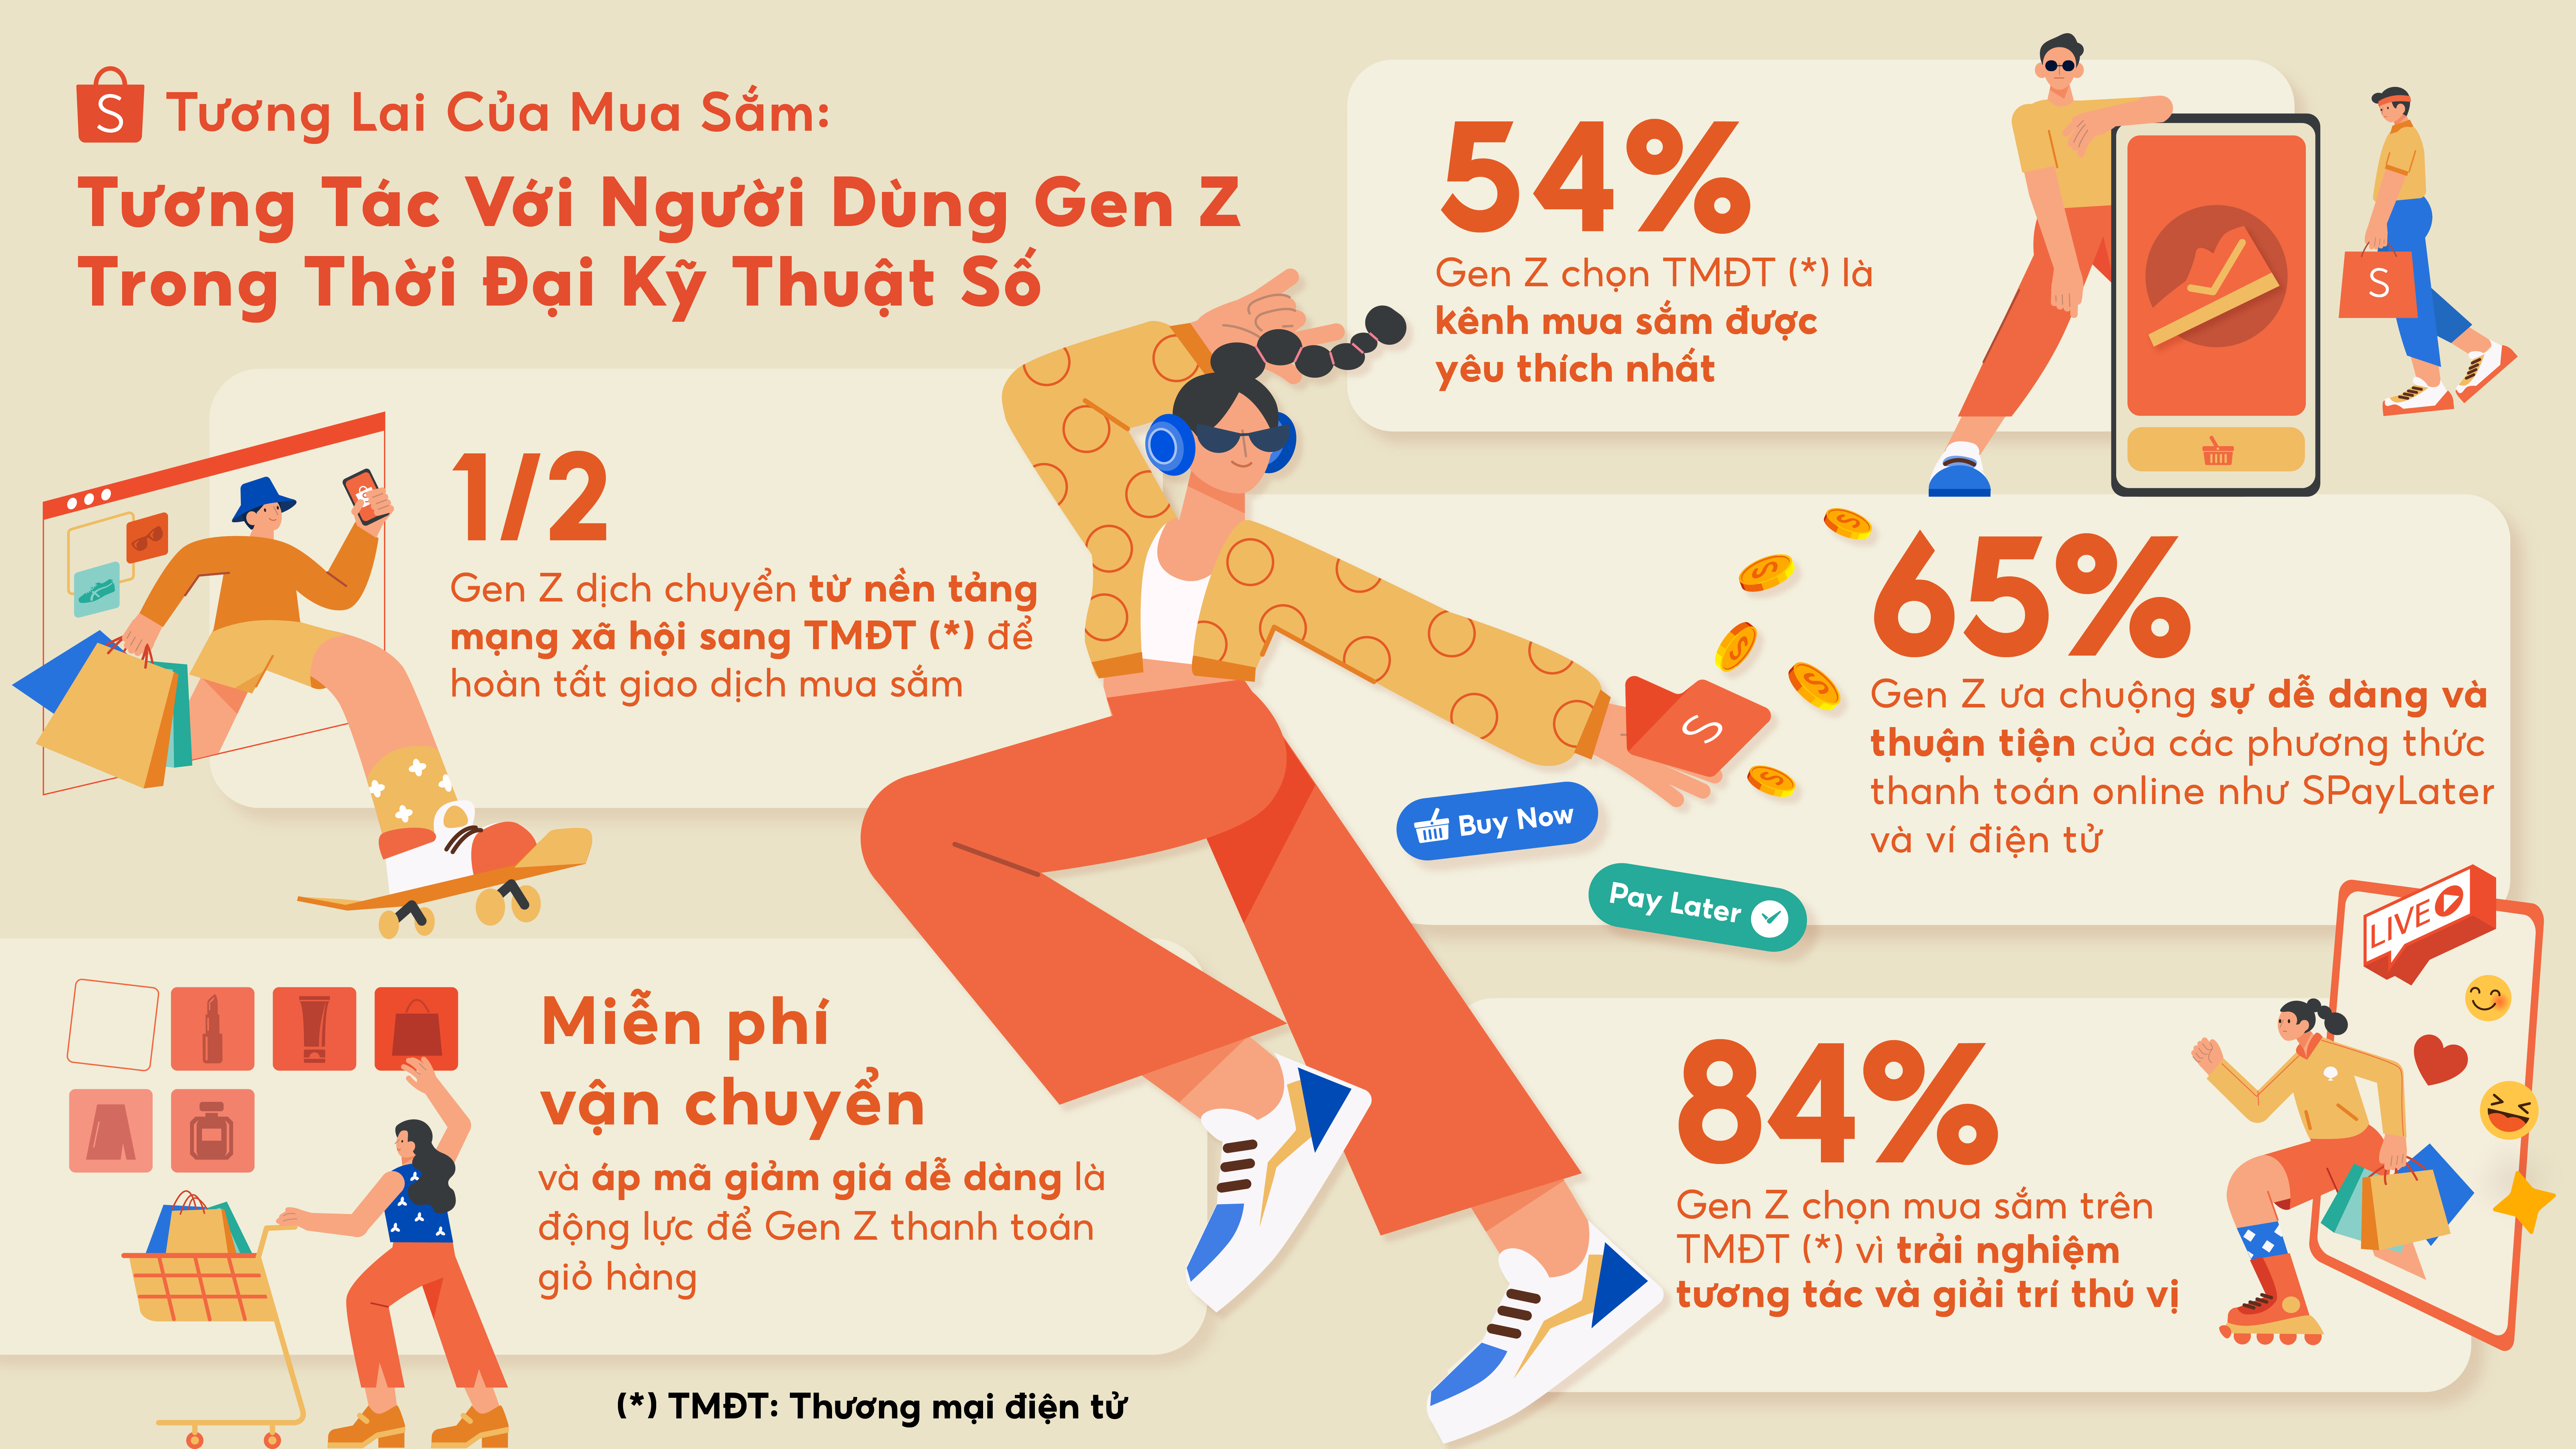 2/3 Gen Z Việt Nam ưu tiên ứng dụng TMĐT để tìm kiếm thông tin mua sắm - ảnh 1